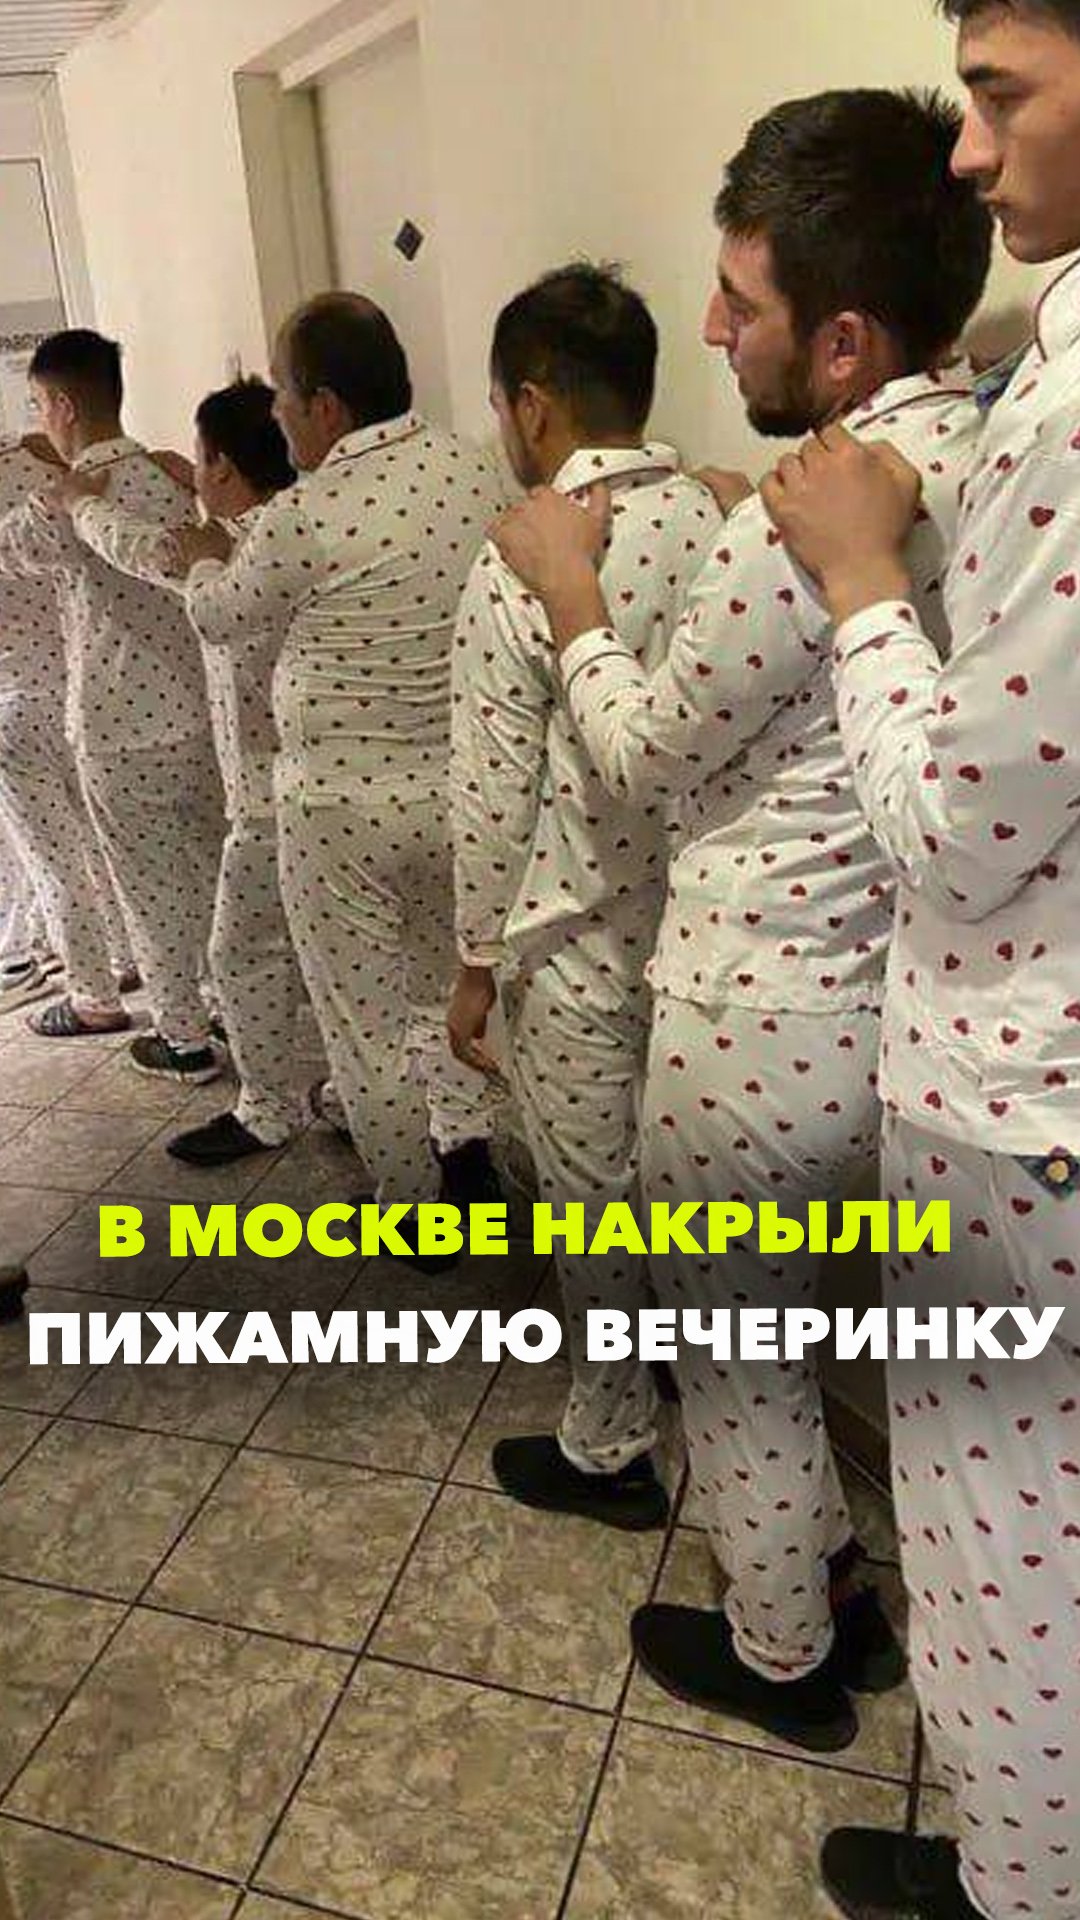 В Москве накрыли вечеринку. На этот раз не голую — пижамную